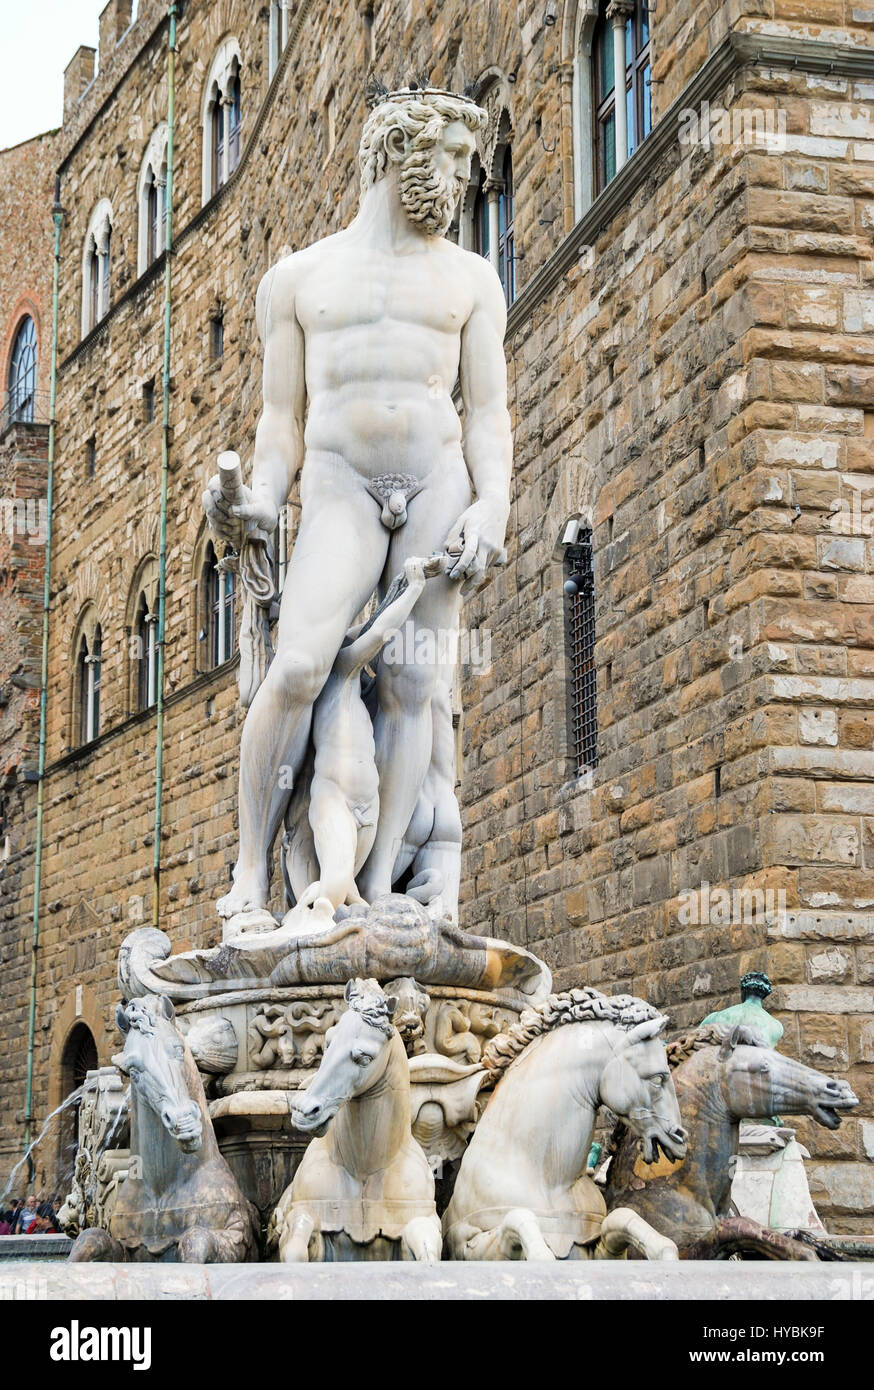 La Statue et fontaine de Neptune entouré par les hippocampes, Piazza della Signoria, Florence, Italie Banque D'Images